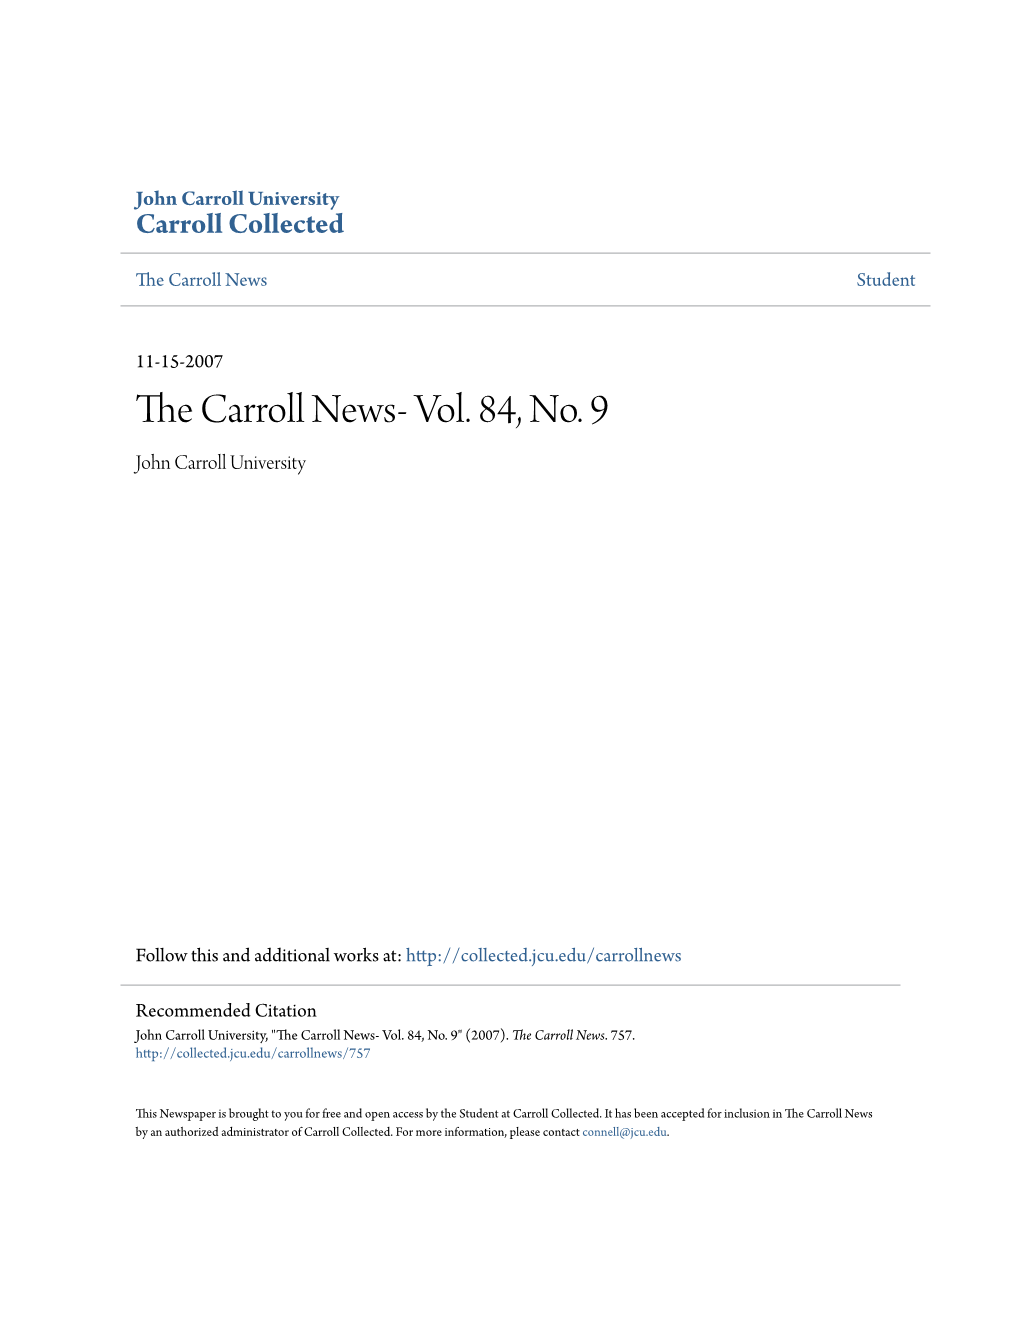 The Carroll News- Vol. 84, No. 9